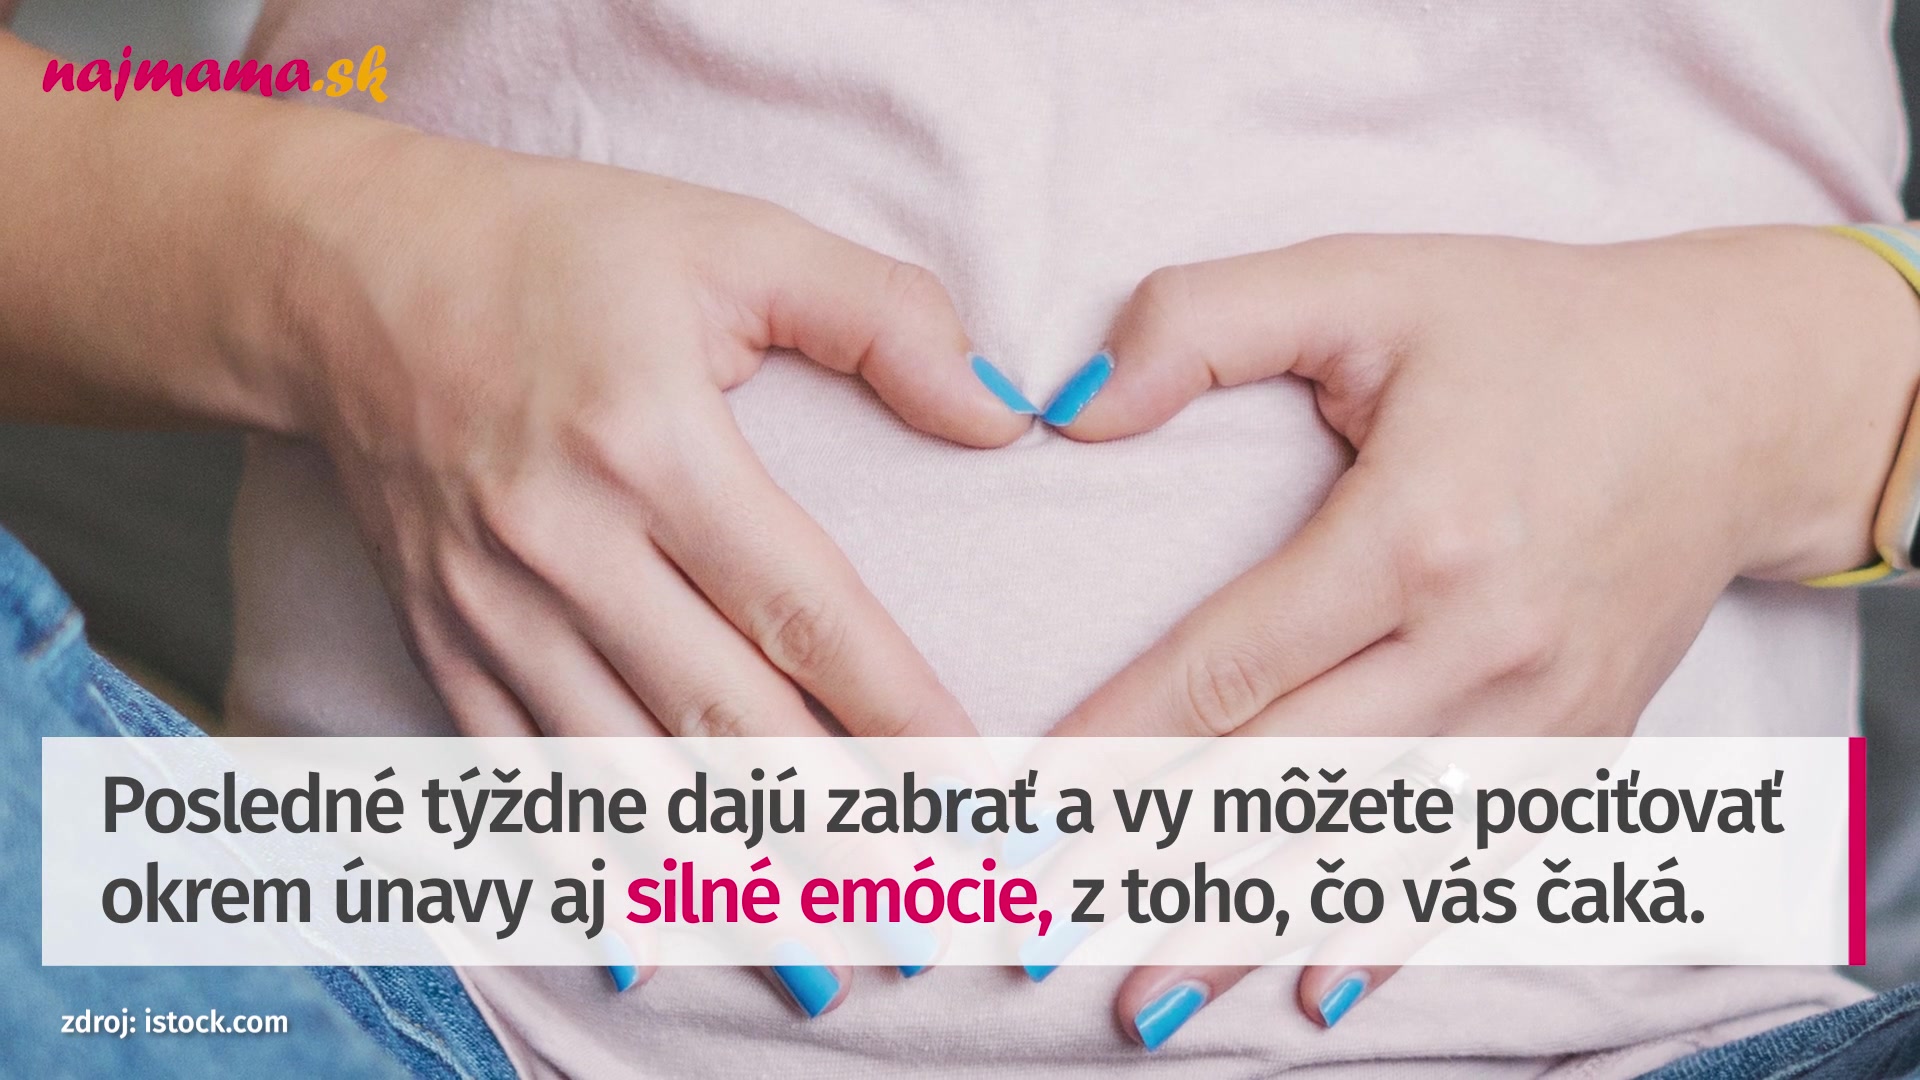 Keď bruško rastie: Ako sa posúvajú orgány v tele počas tehotenstva? |  Najmama.sk